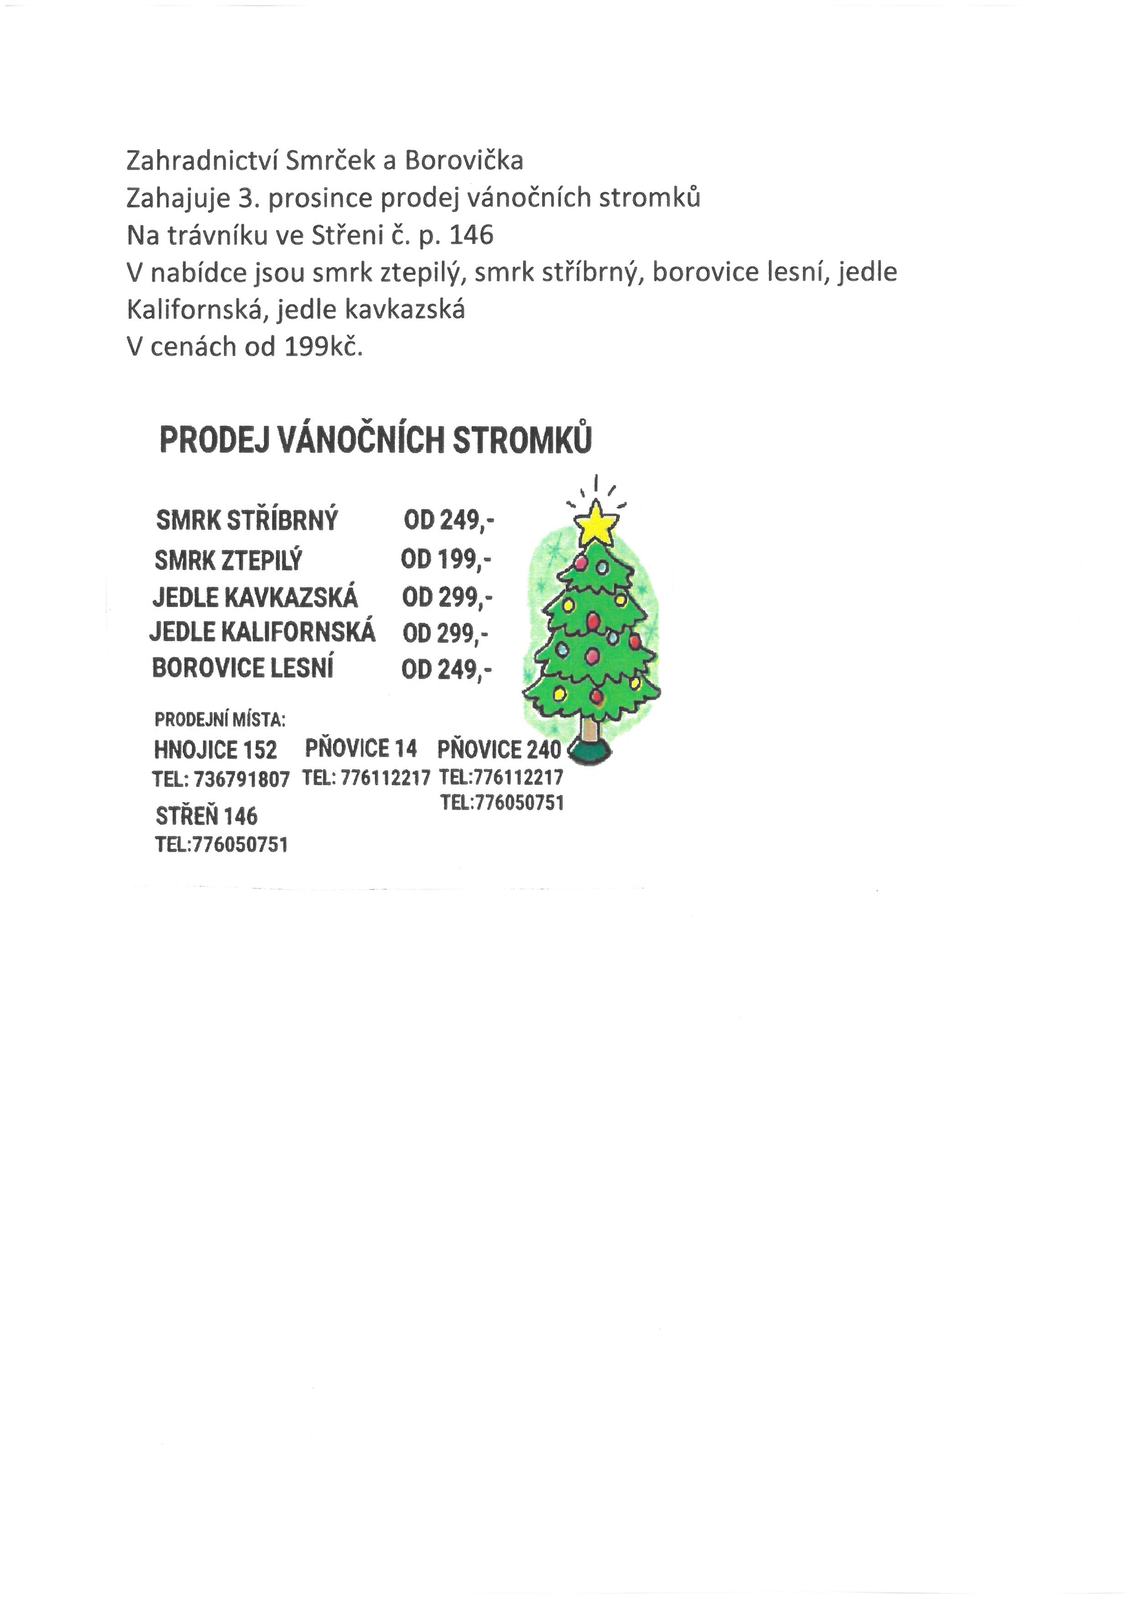 Prodej vánočních stromků.jpg